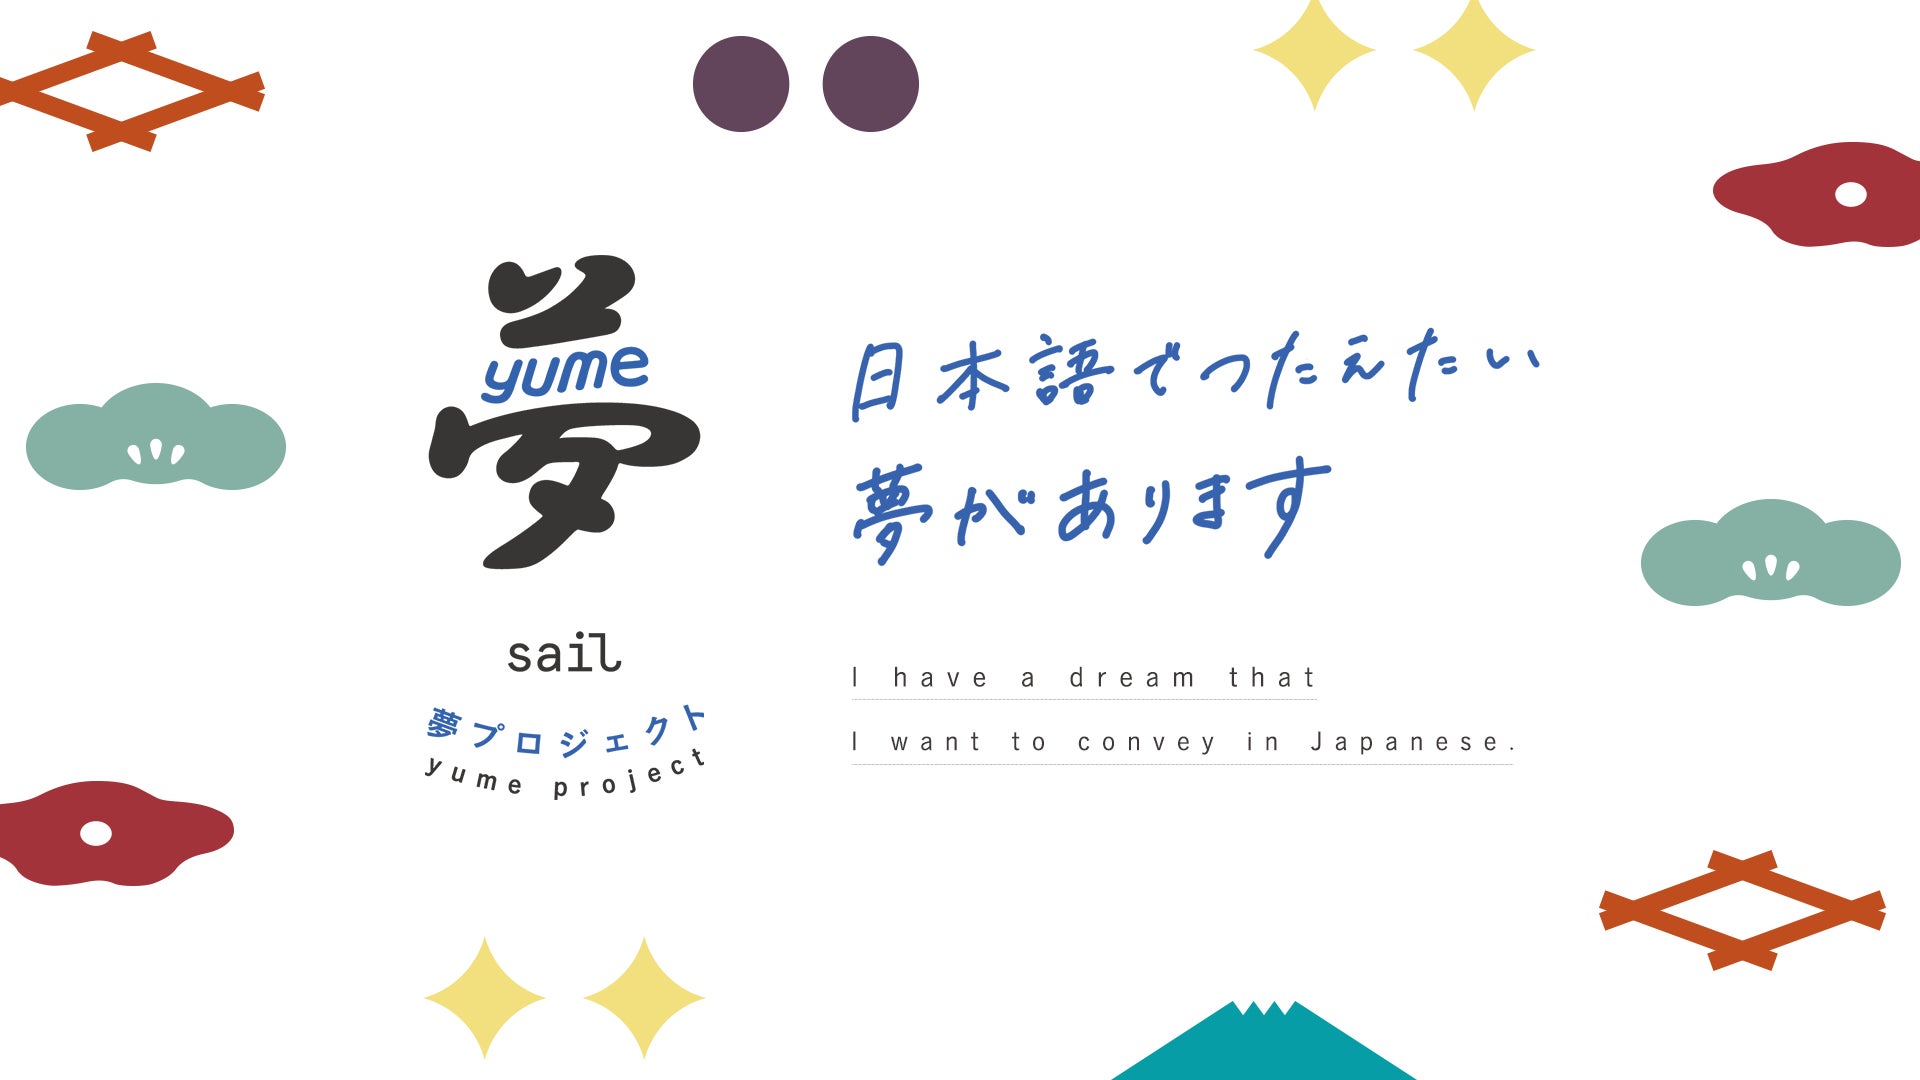 世界最大級の日本語スピーチコンテスト「第2回 Sail夢プロジェクト」(株式会社Helte主催)のエントリーを開始しました。